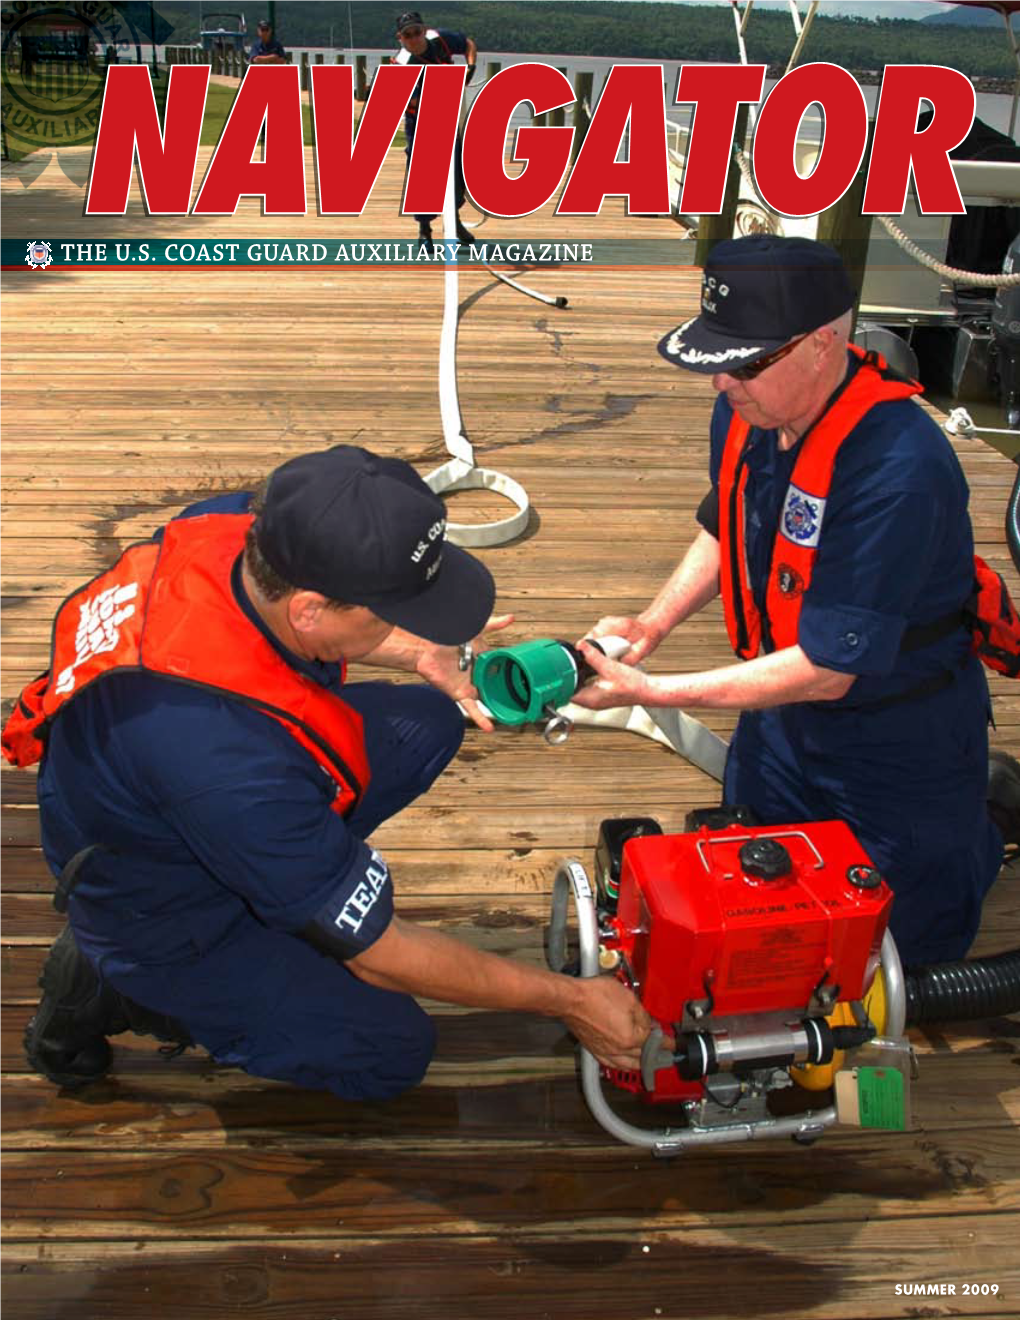 The U.S. Coast Guard Auxiliary Magazine